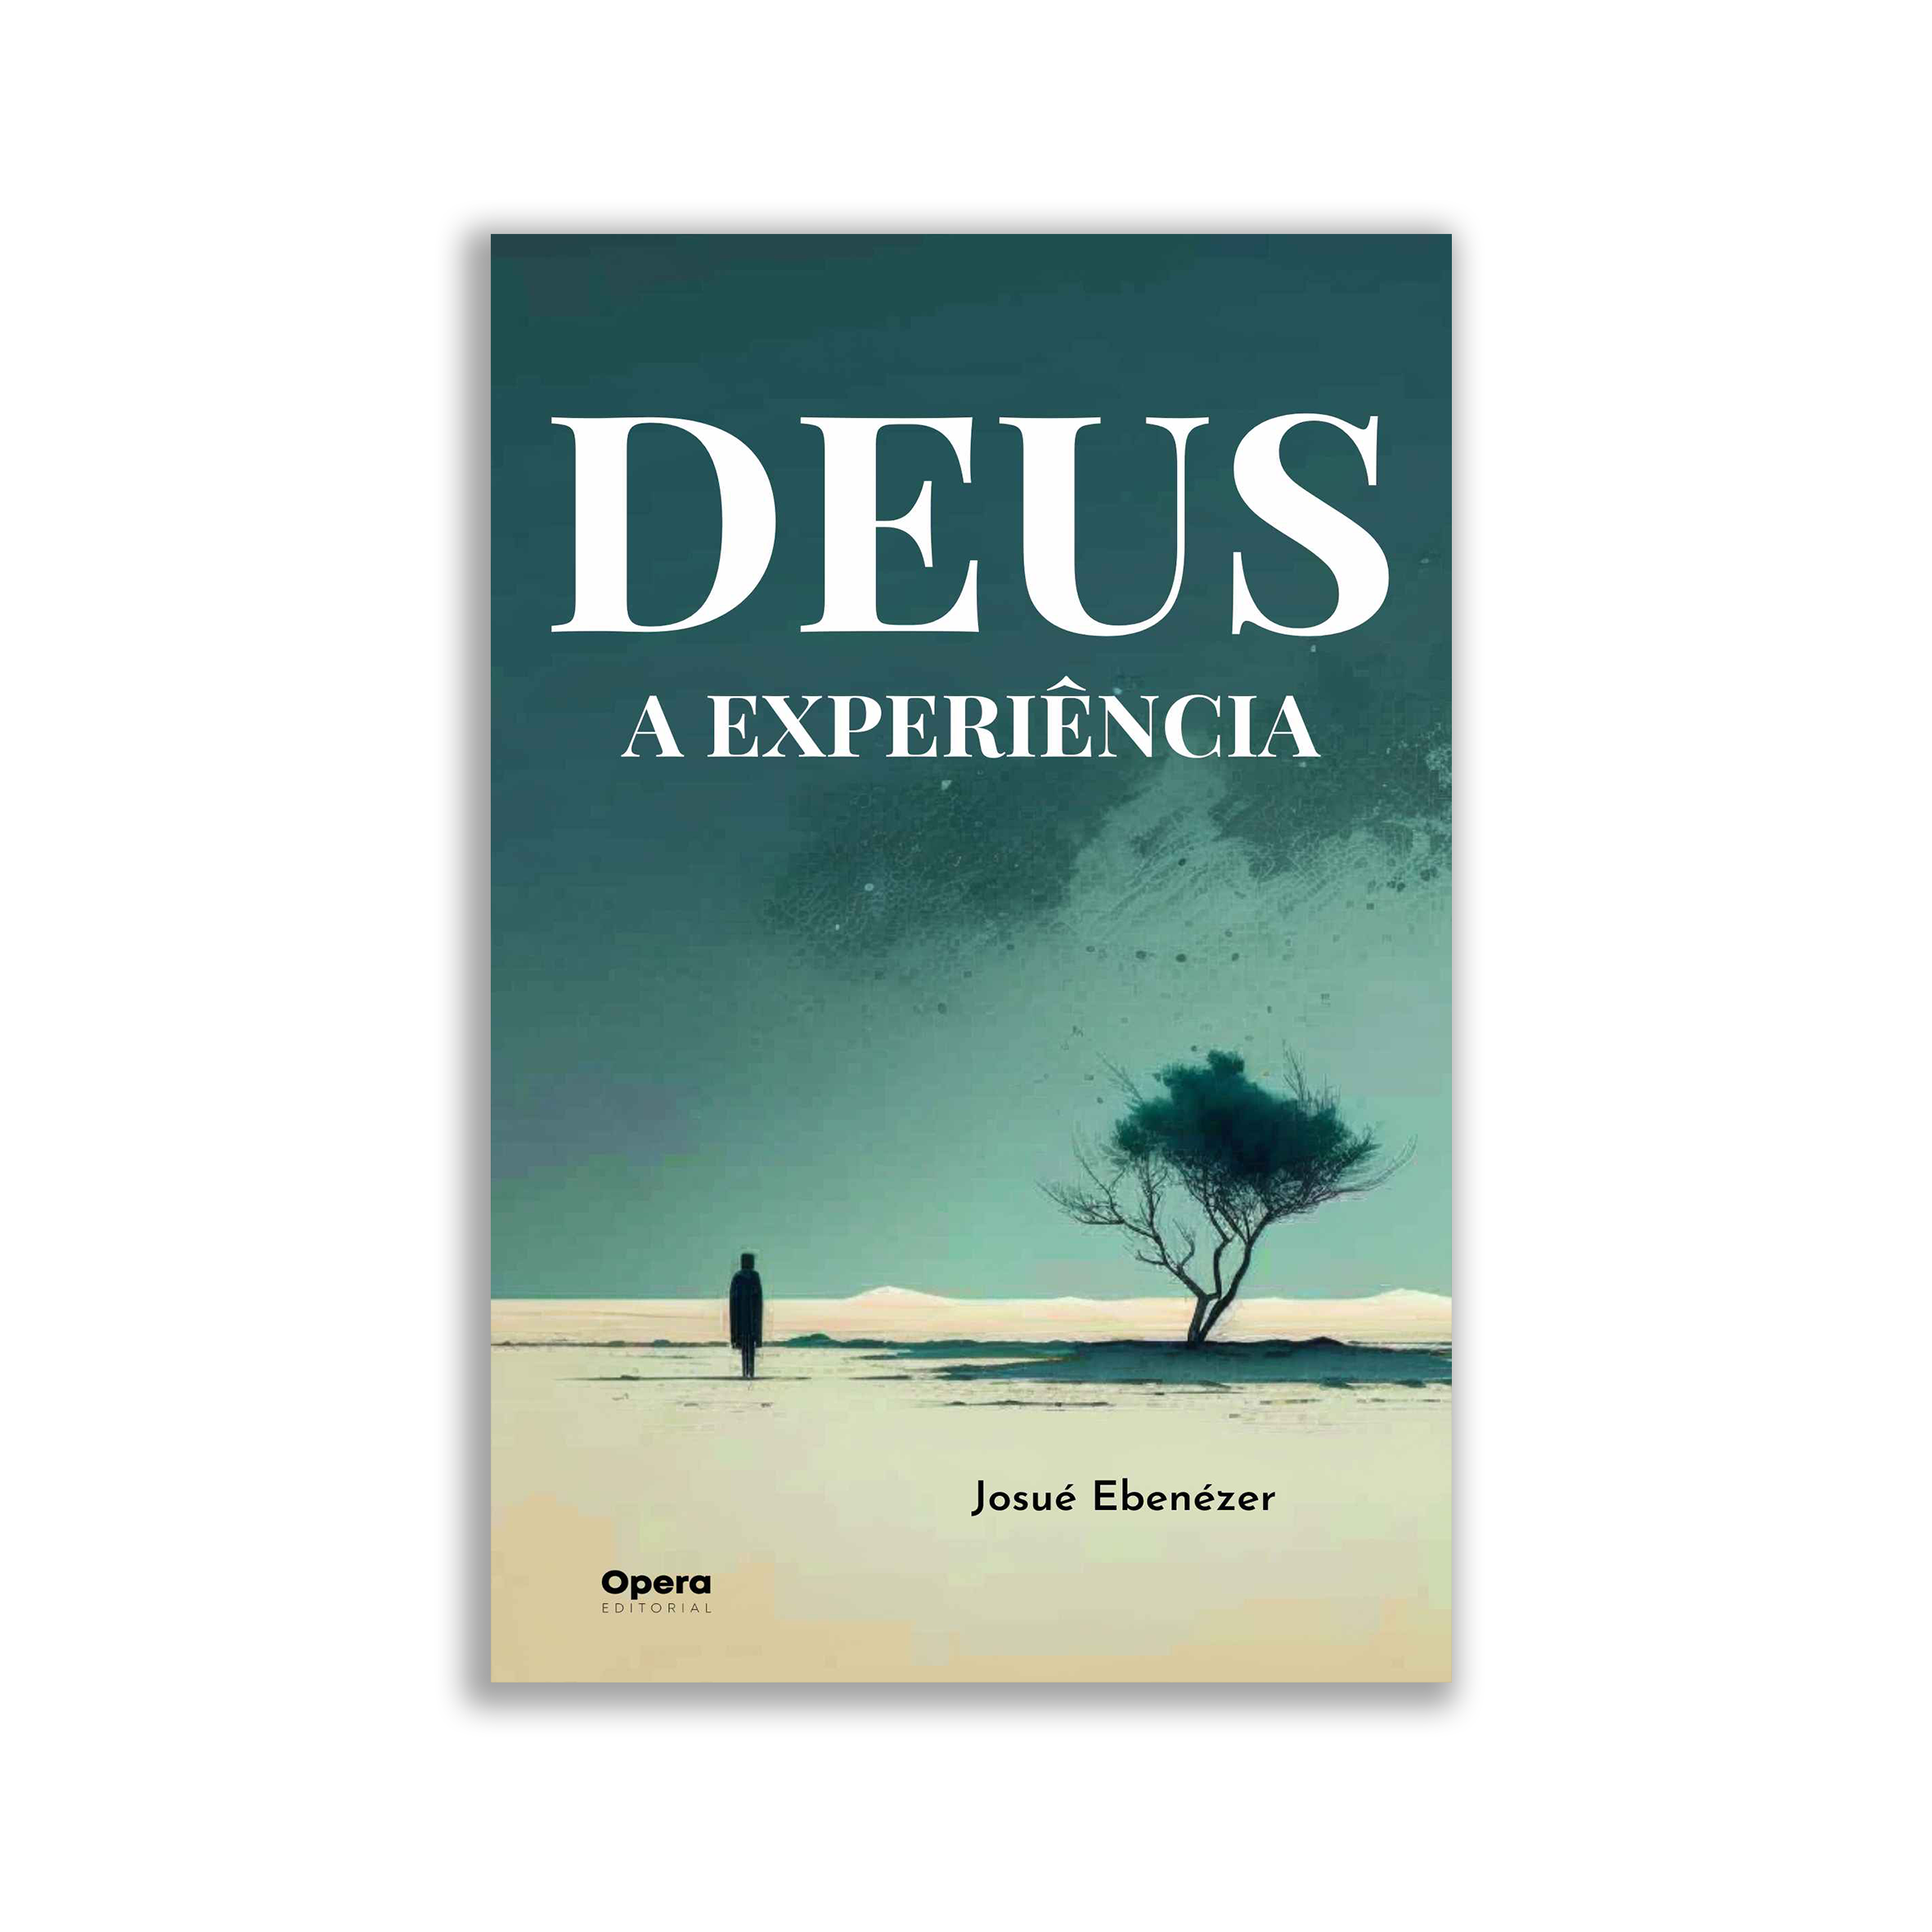 Perguntas Livros de Josue, PDF, Josué